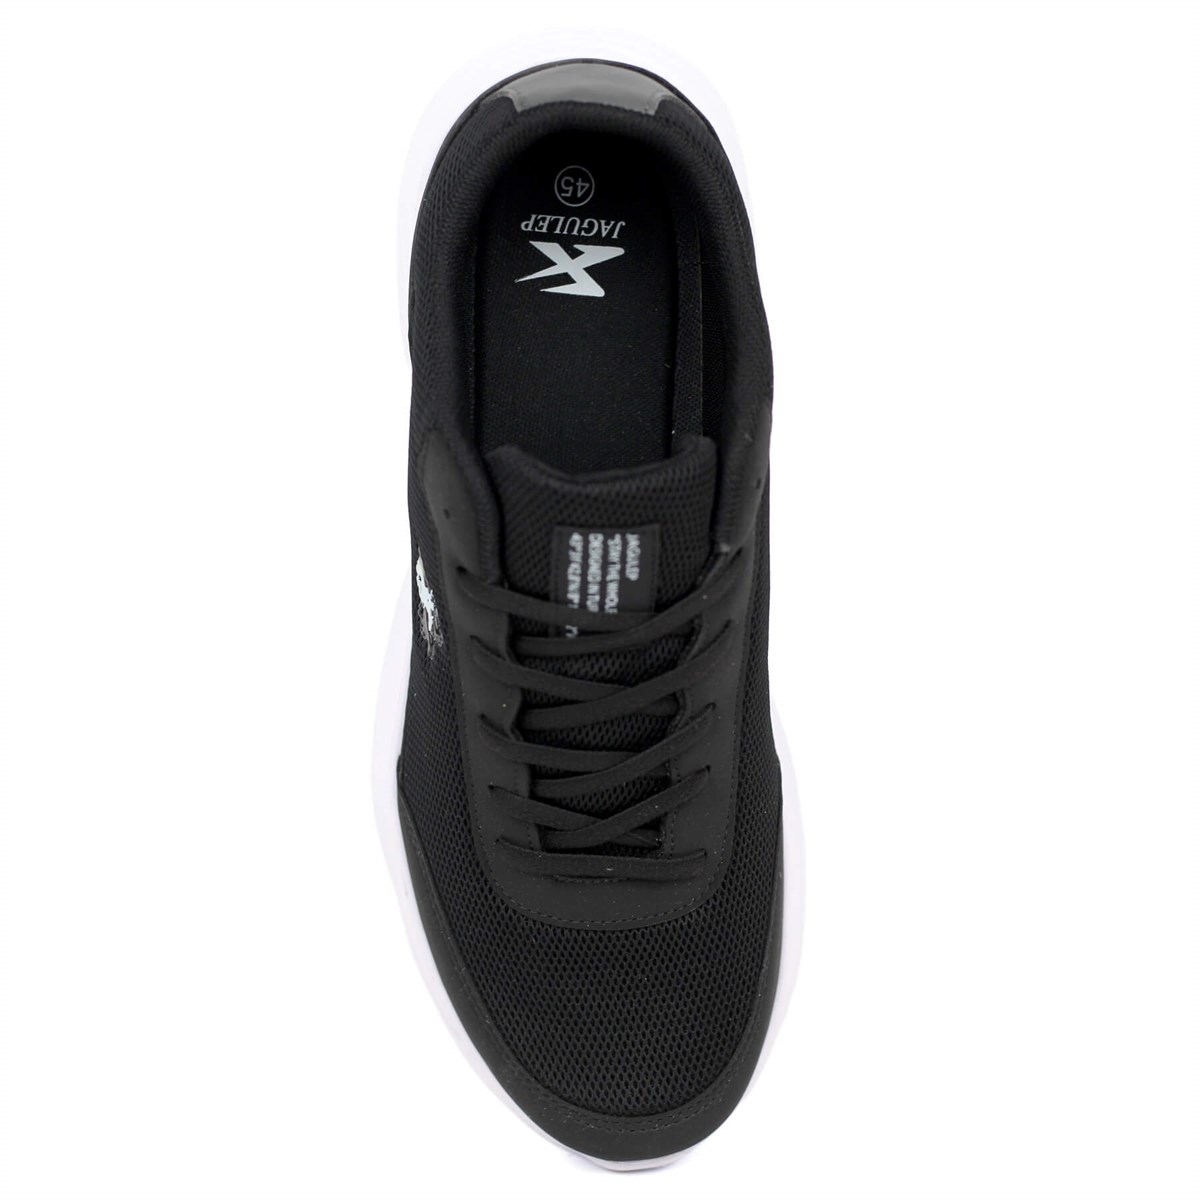 Jagulep Günlük Sneaker Ayakkabı Büyük Numara Erkek Siyah 2655